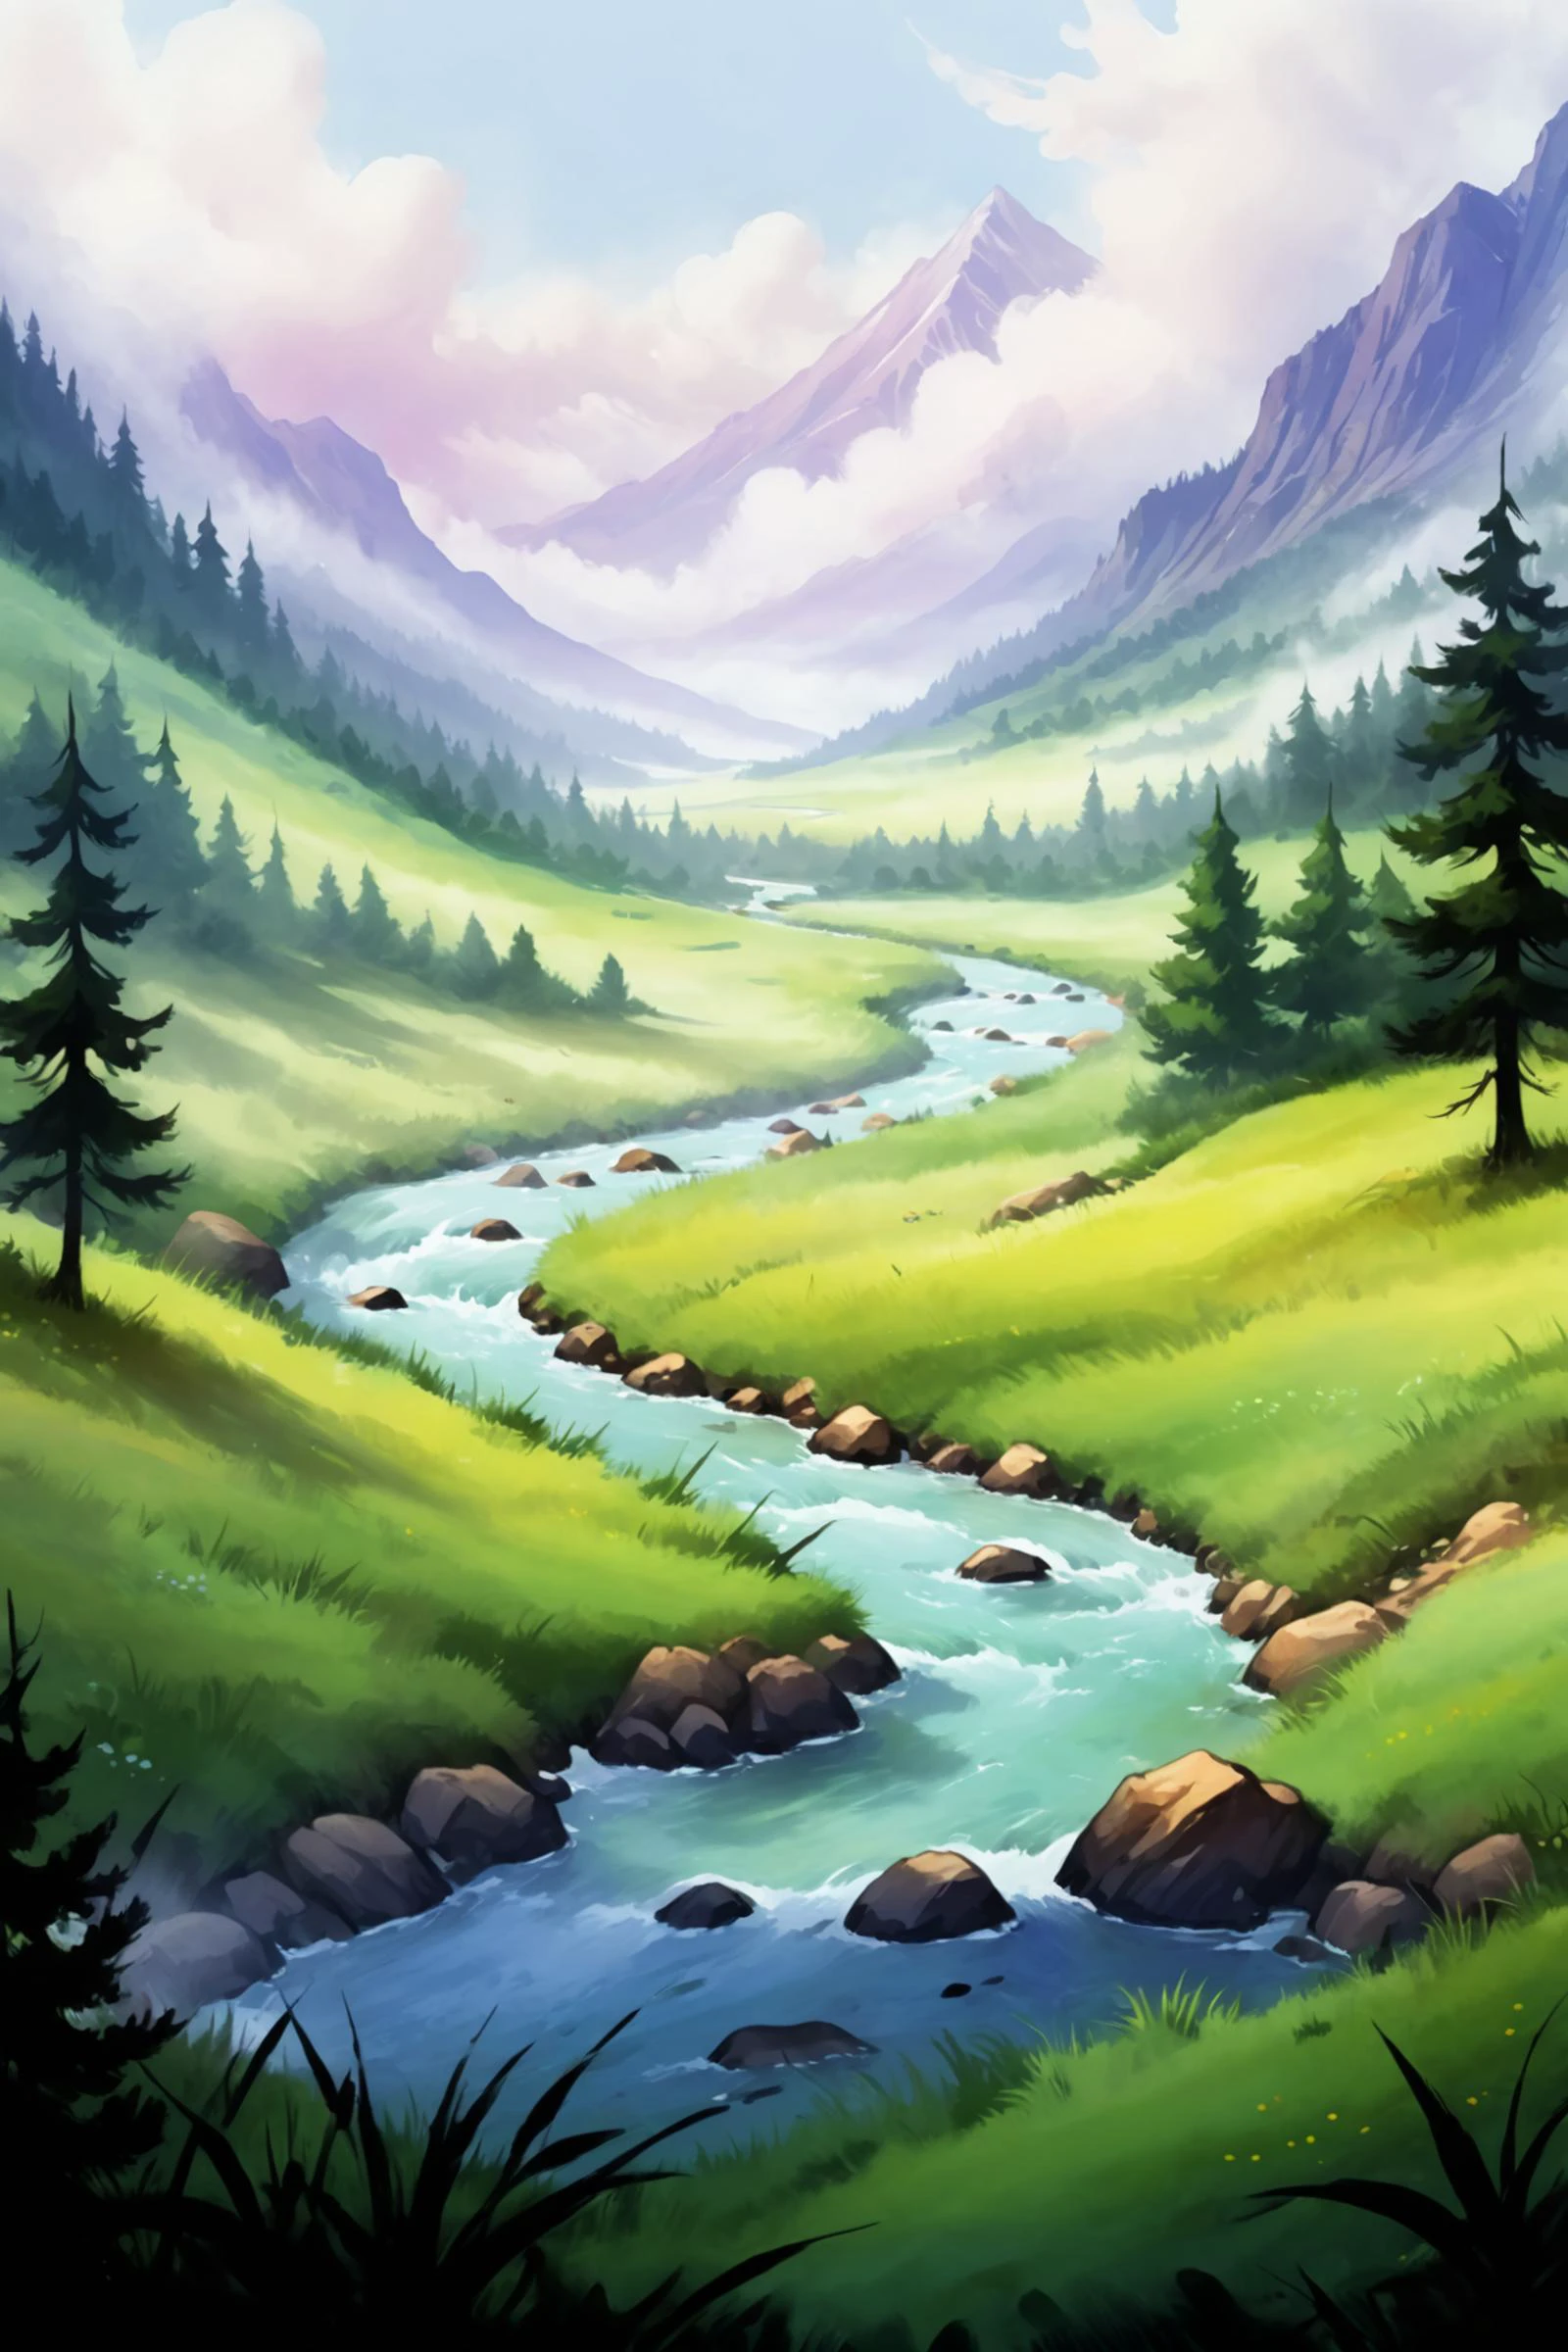 2D сцена игры, картина маслом и акварелью рисунок минималистского пейзажа, река, луг, туман, облака, гора, дерево, лес, (шедевр:1.2), Лучшее качество